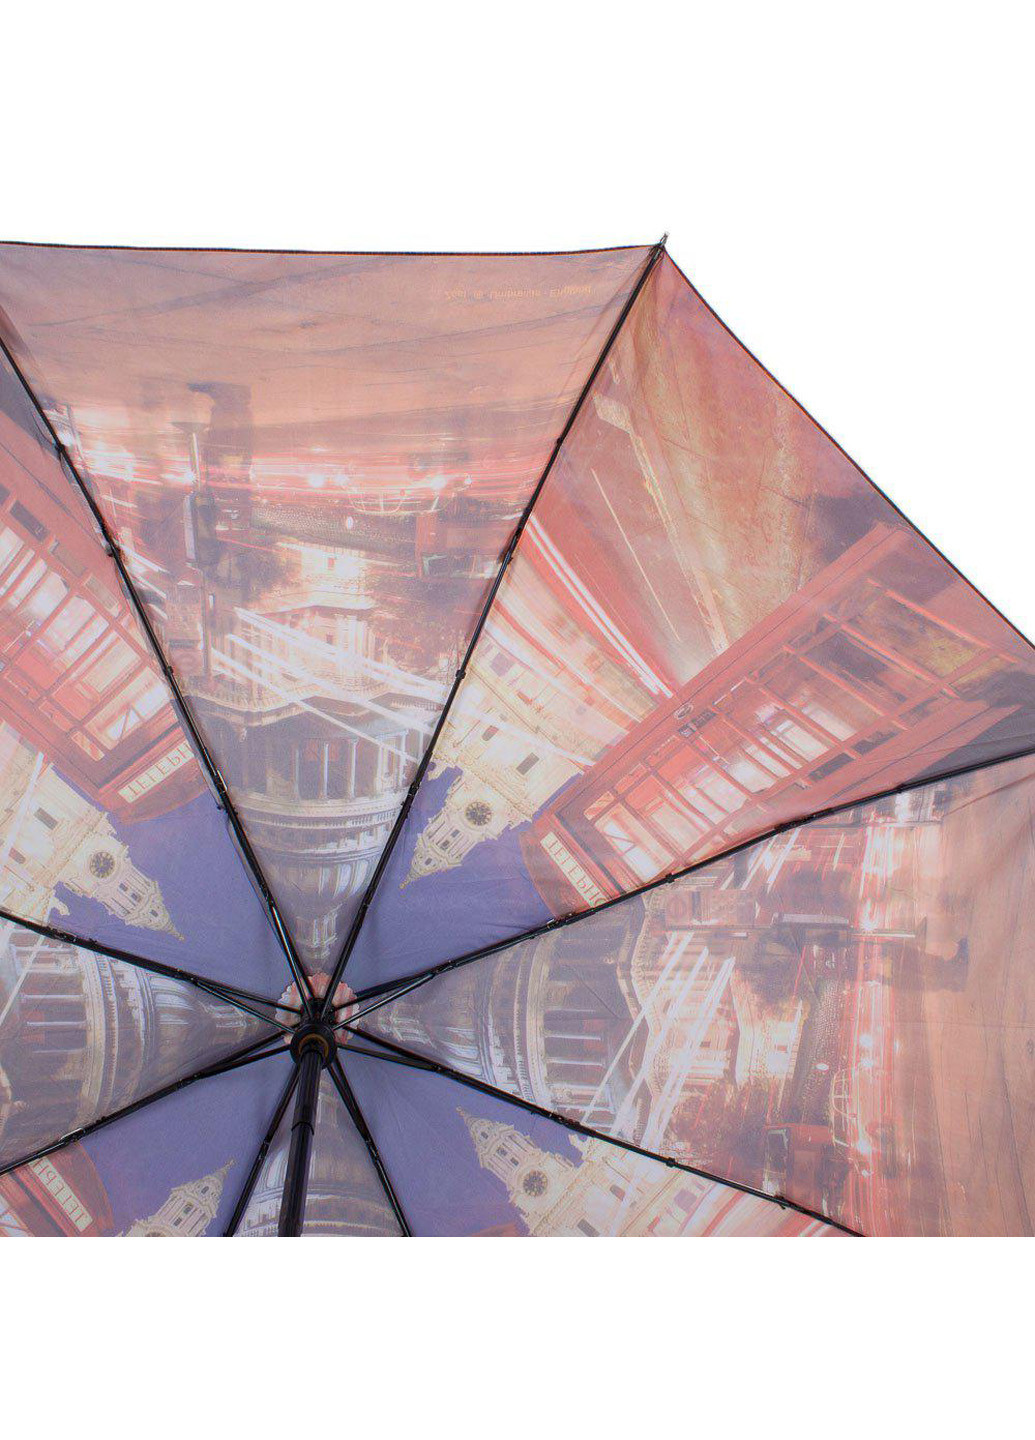 Жіночий складаний парасолька напівавтомат 101 см Zest (194317712)